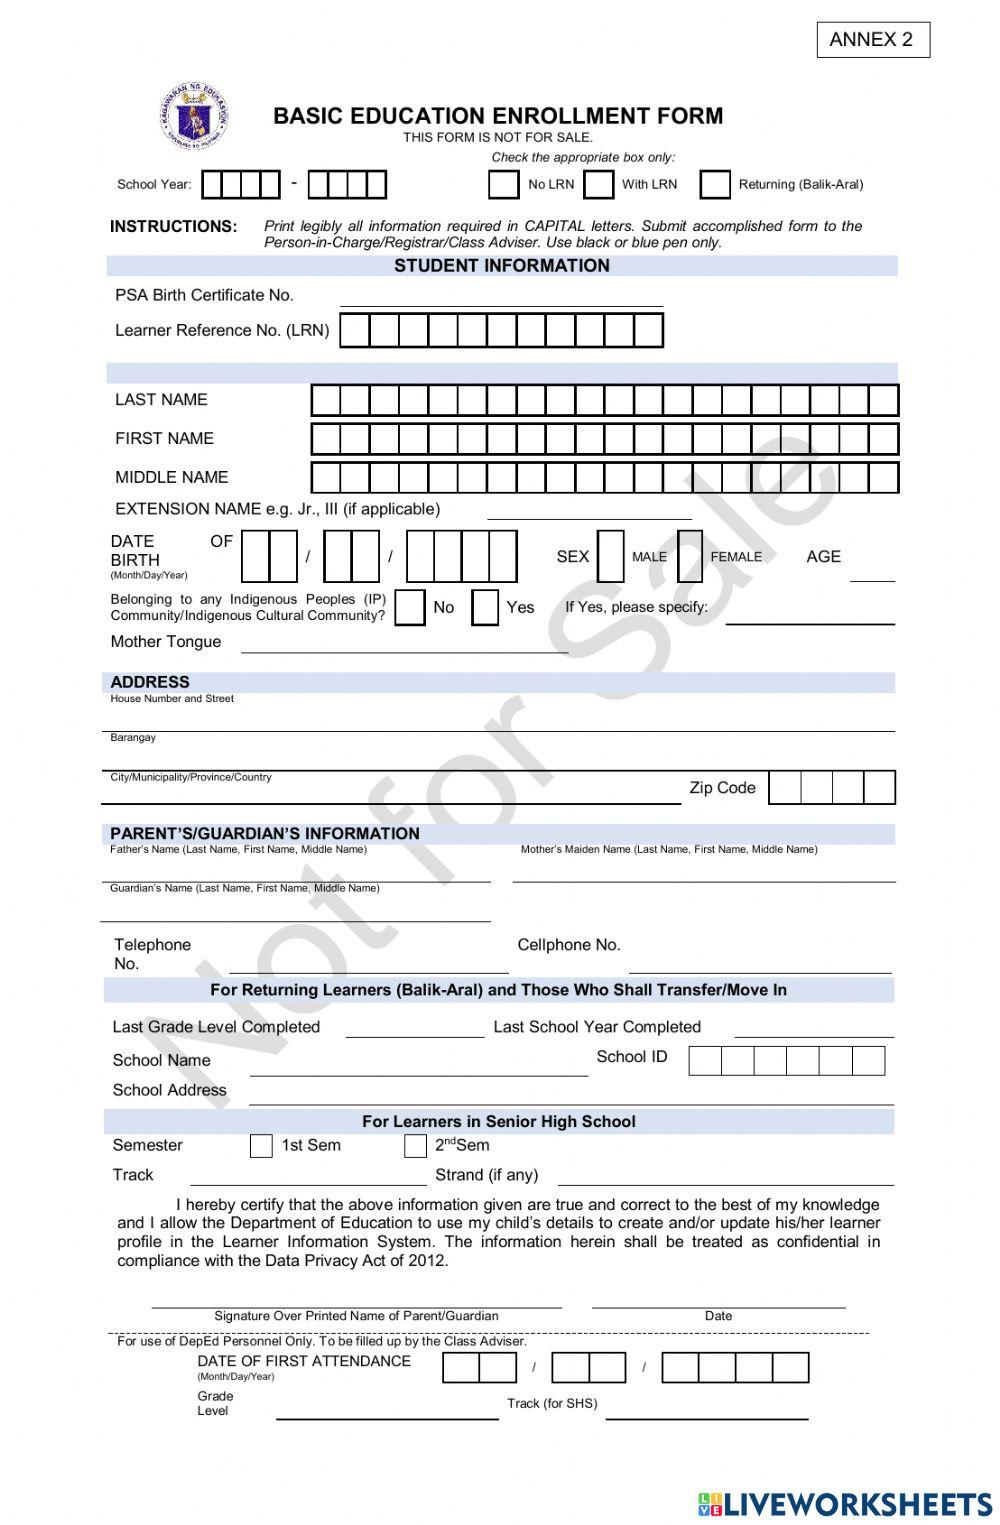 filling-out-forms-worksheet-live-worksheets